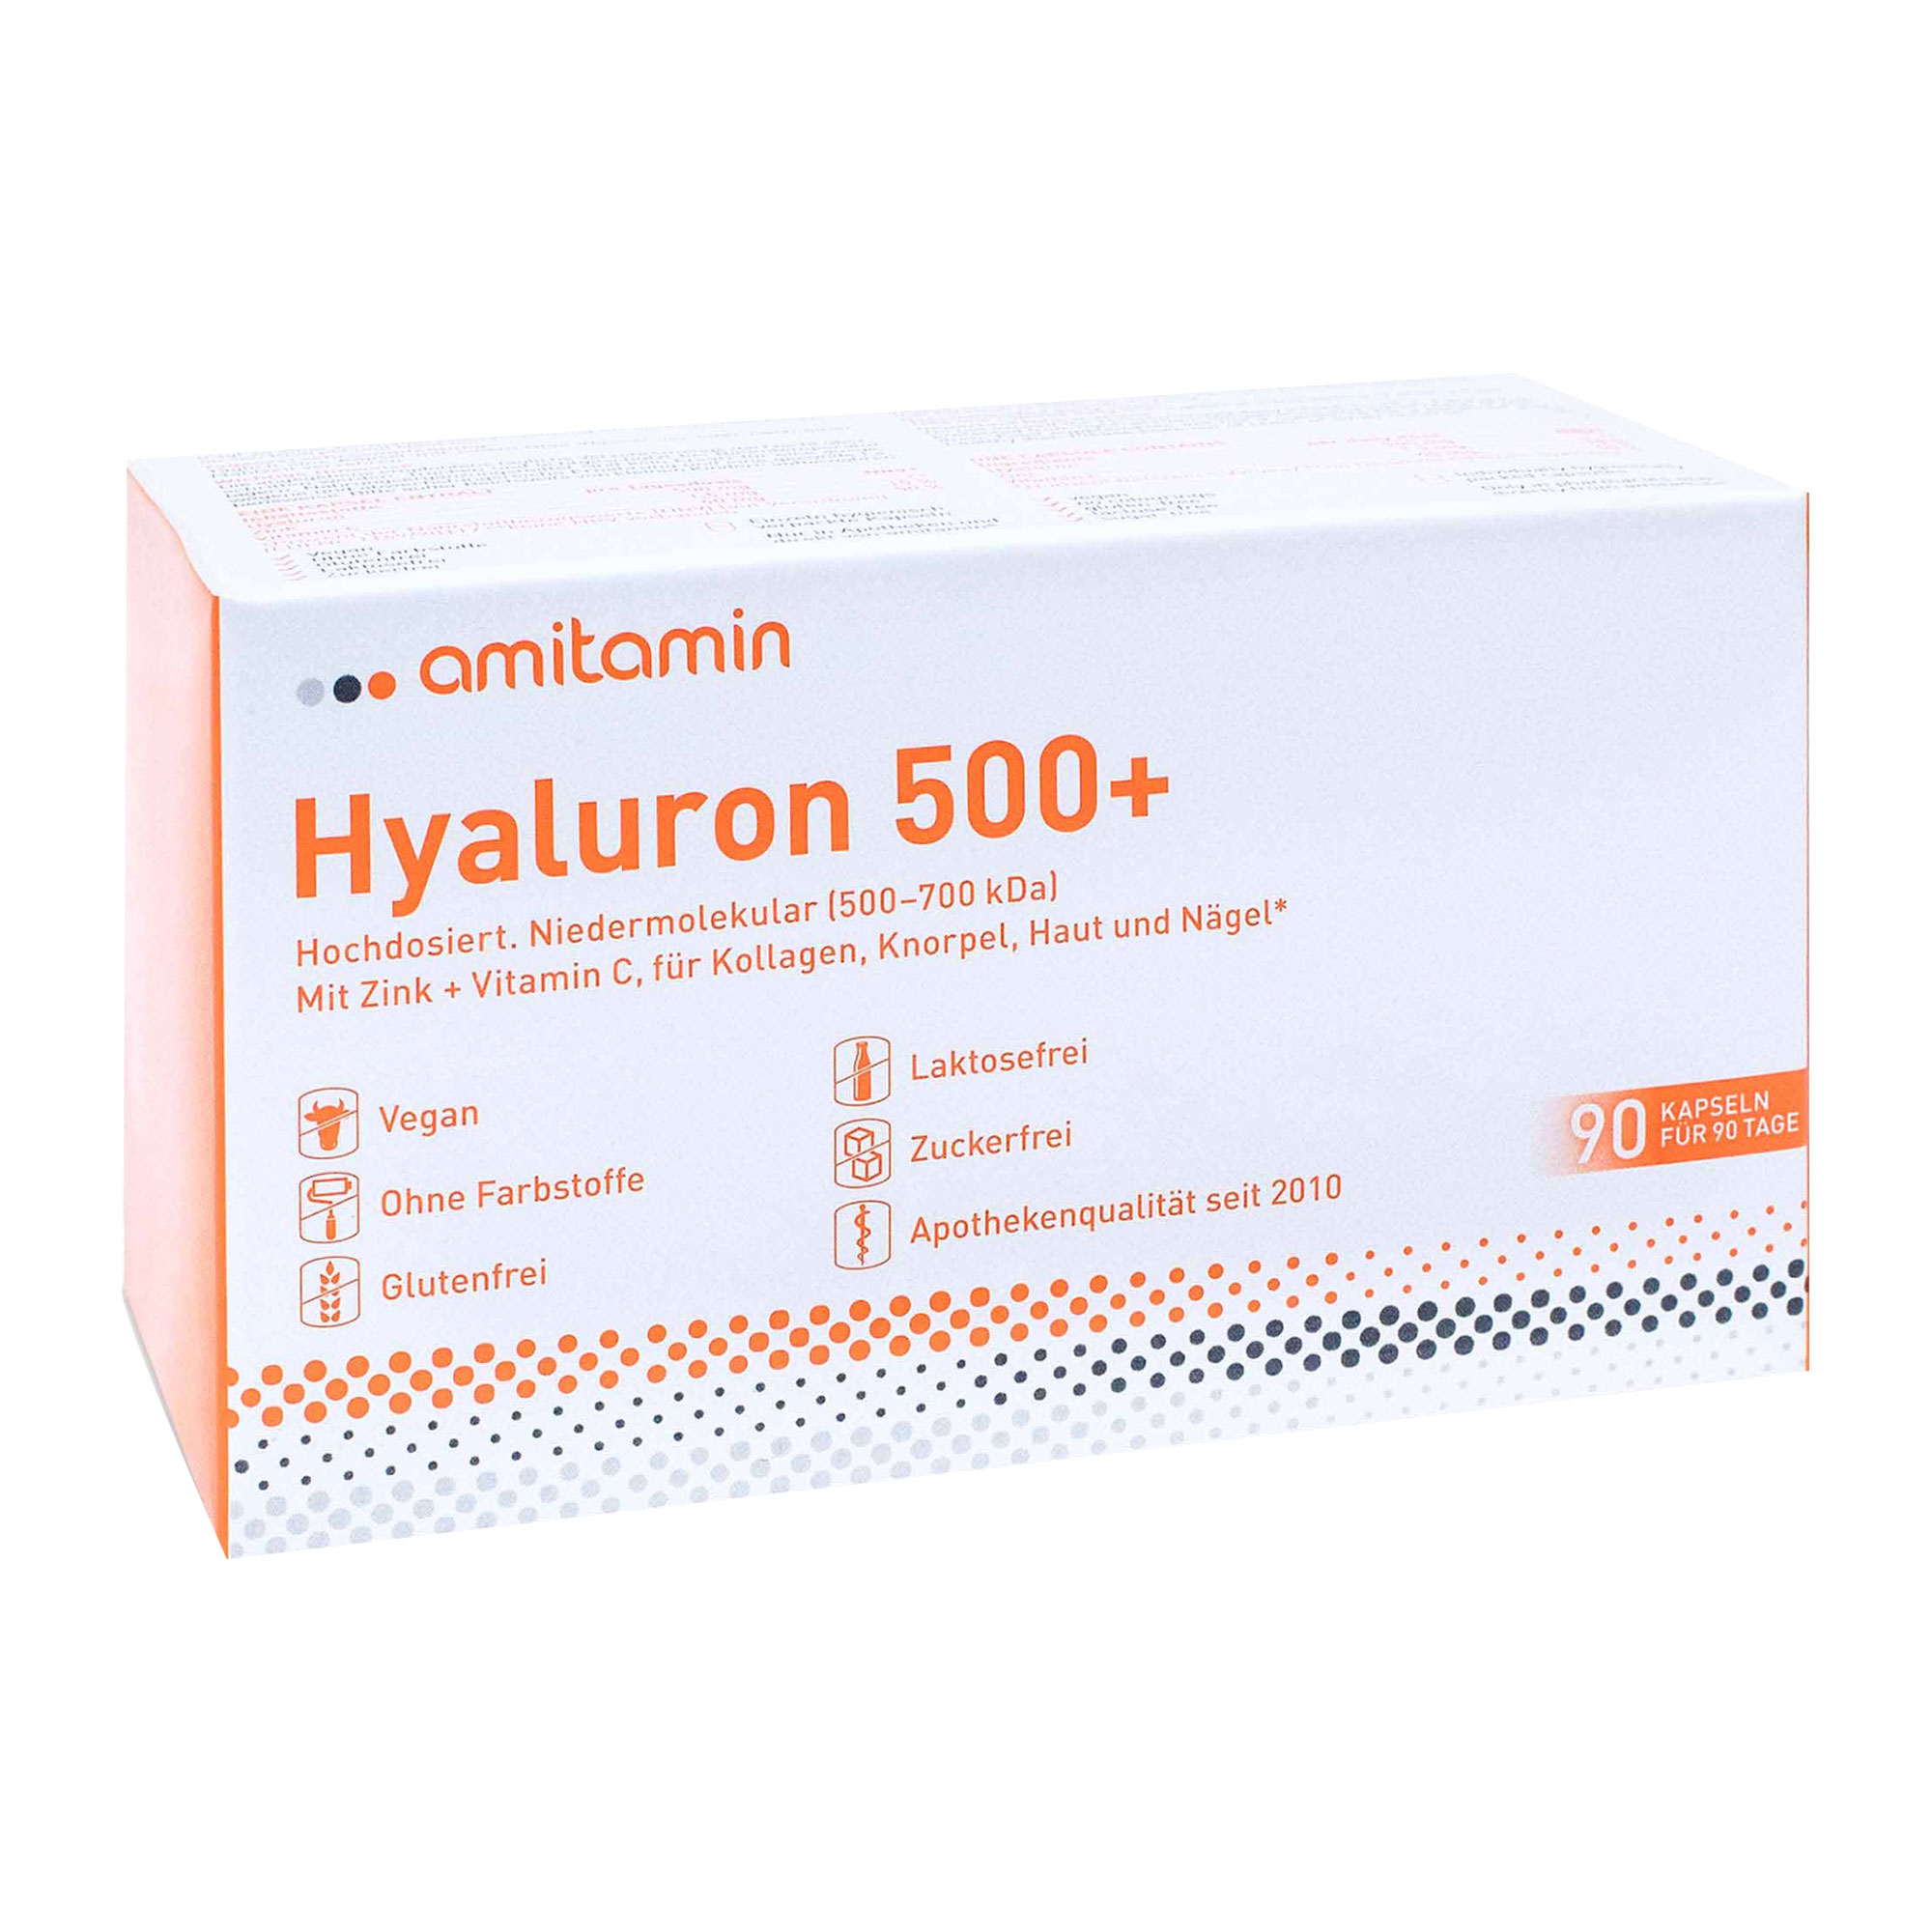 Nahrungsergänzungsmittel mit Hyaluron, Vitamin C und Zink.